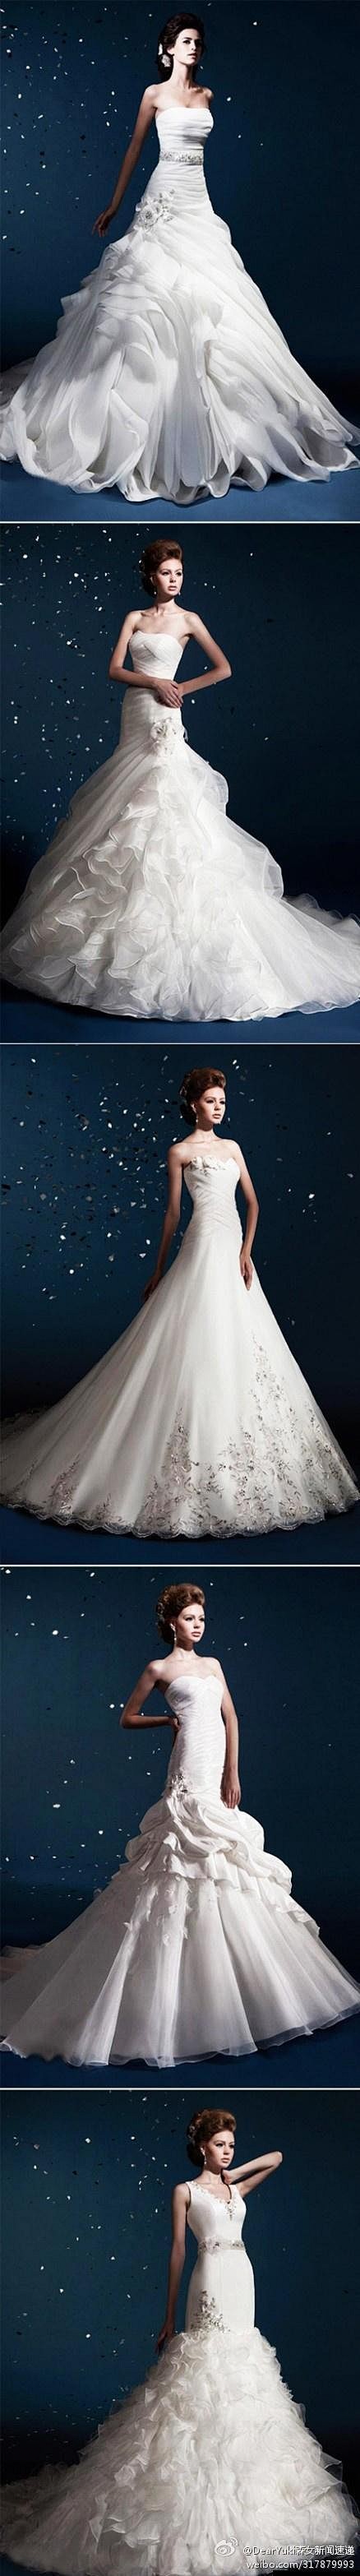 加拿大著名婚纱品牌2012新款婚纱系列